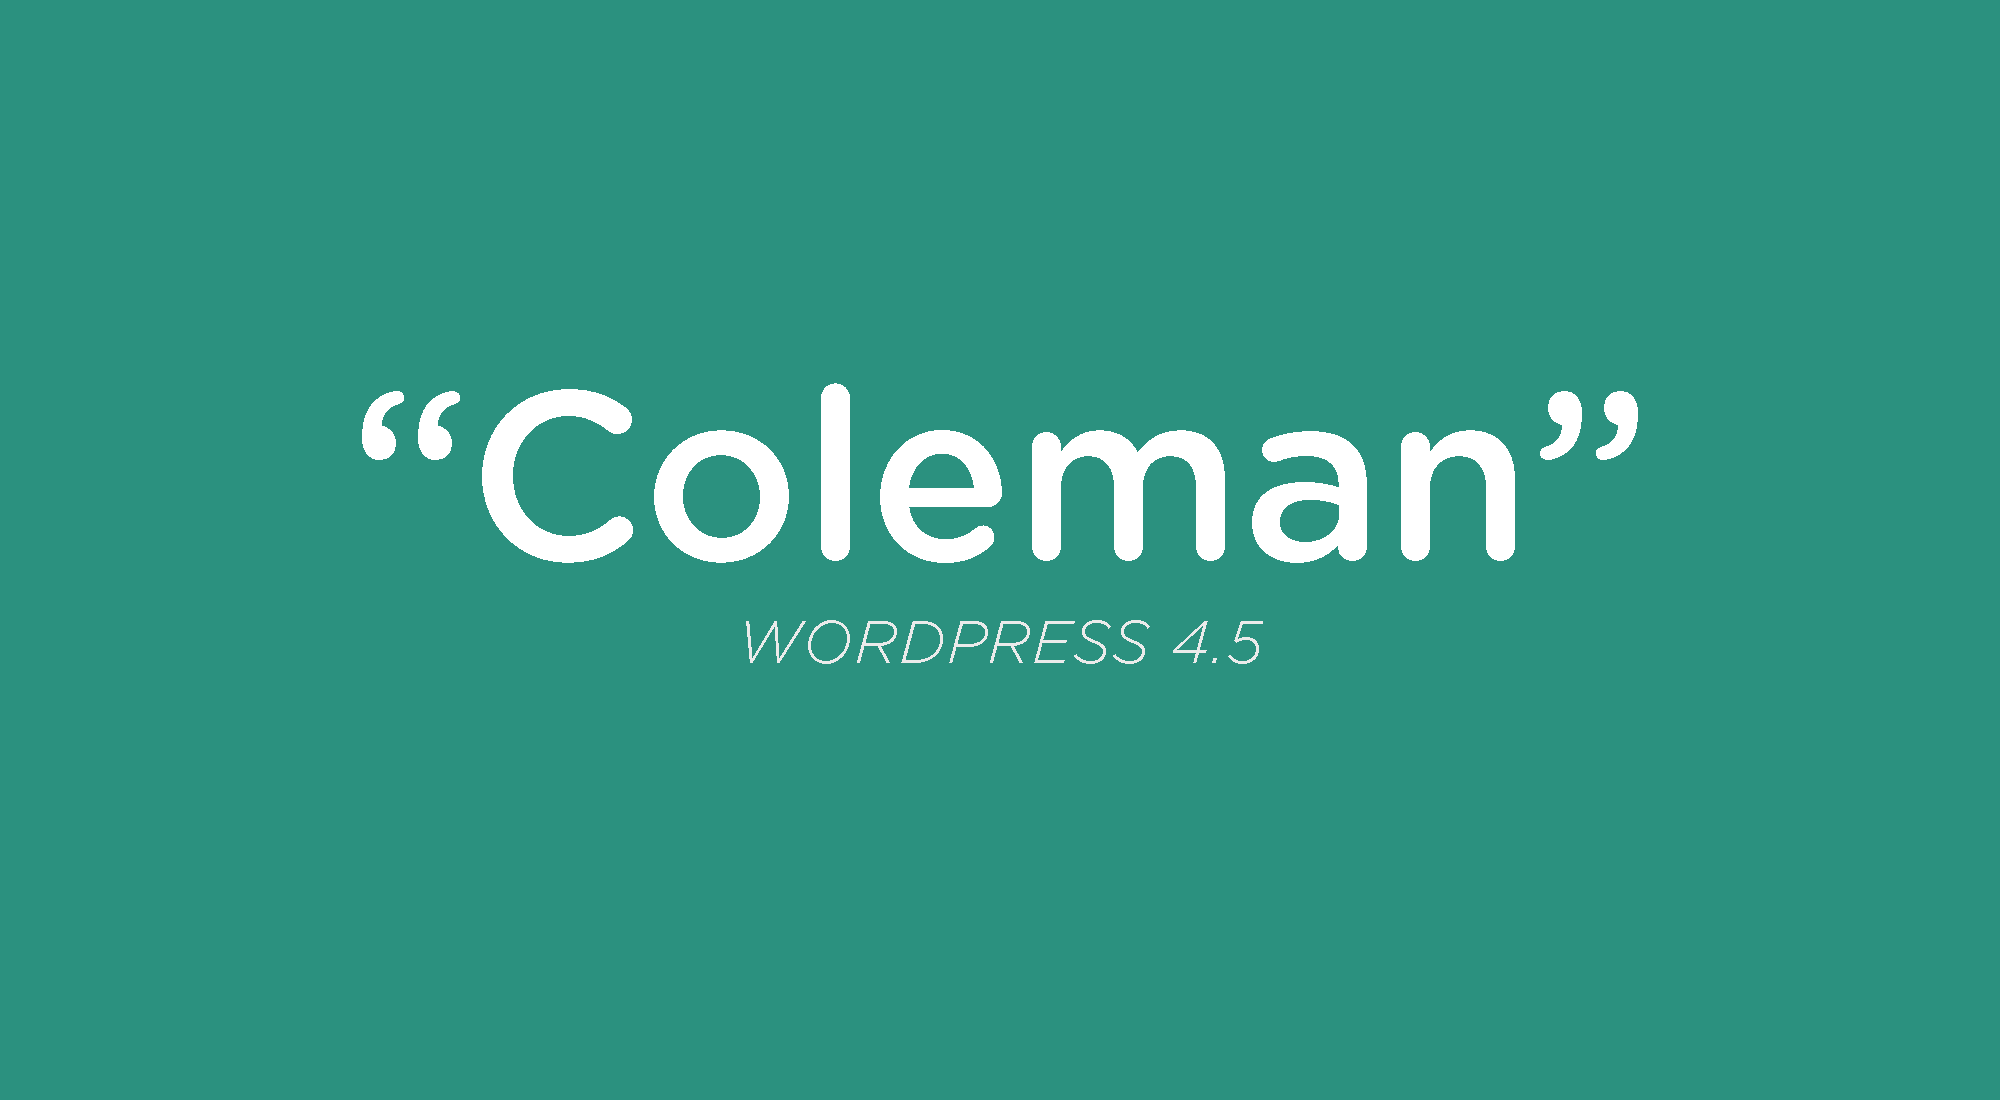 WordPress 4.5, “Coleman”, released